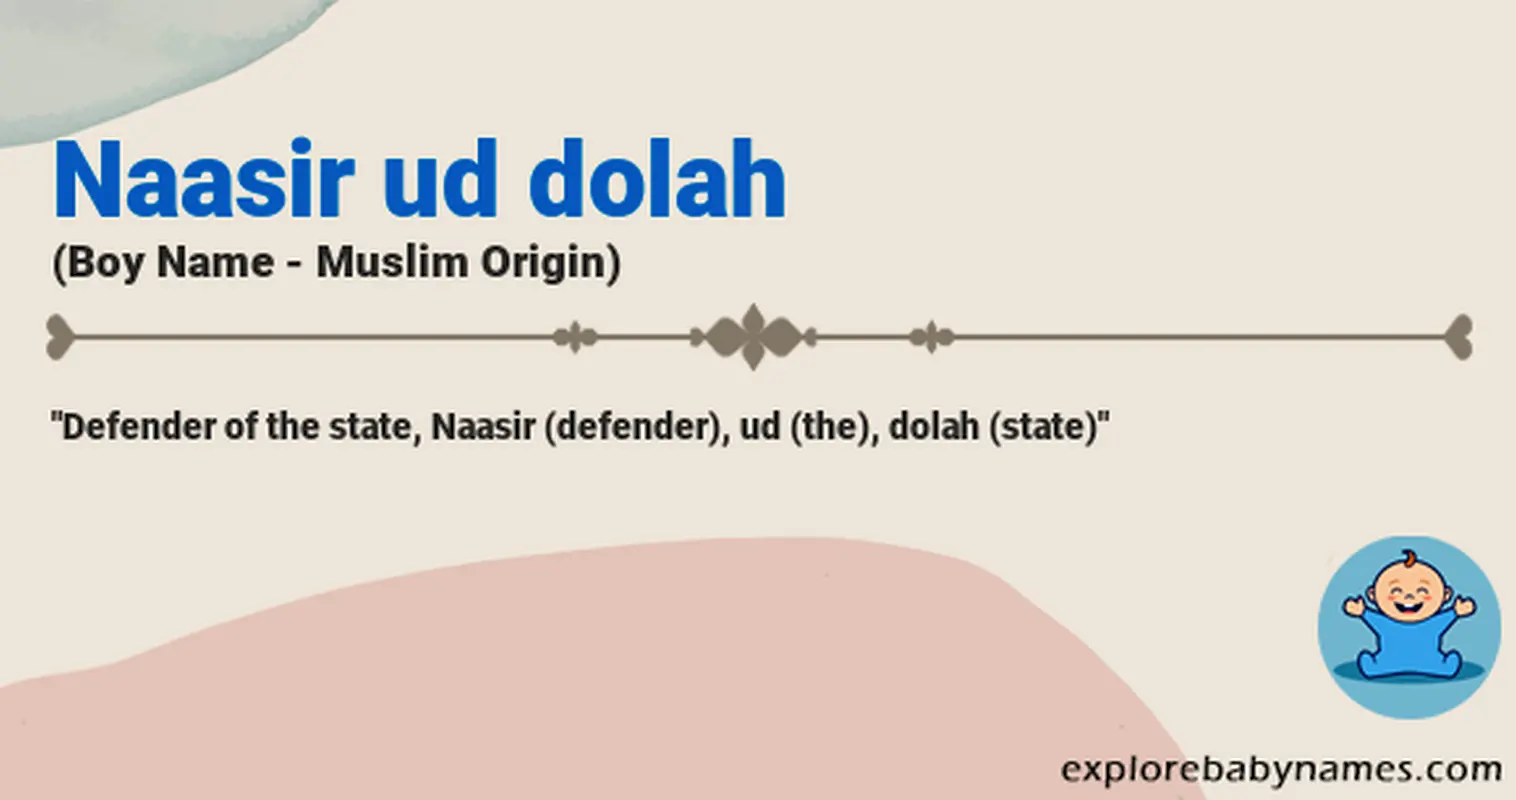 Meaning of Naasir ud dolah